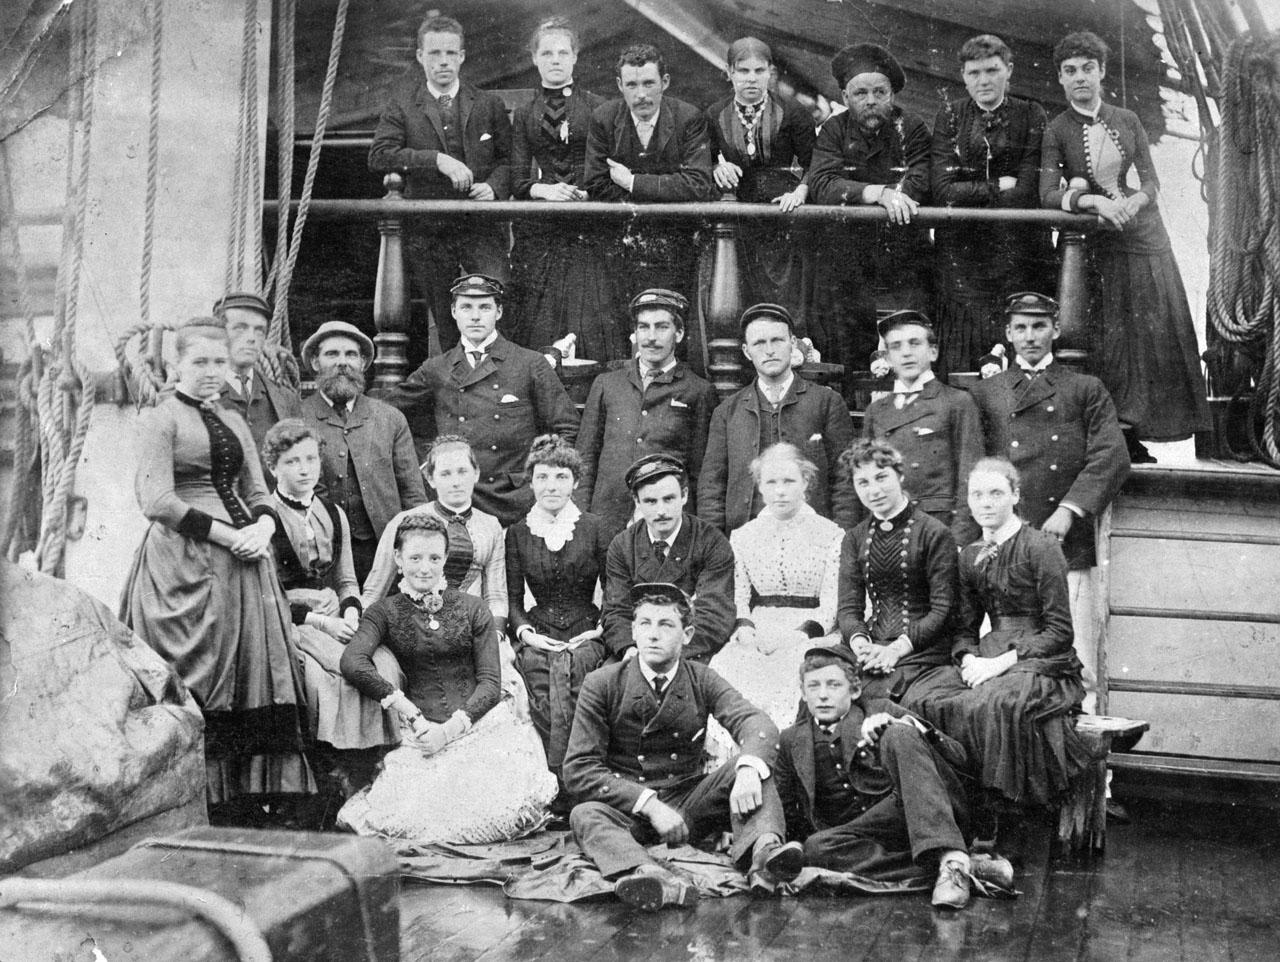 Sailors on board Cutty Sark